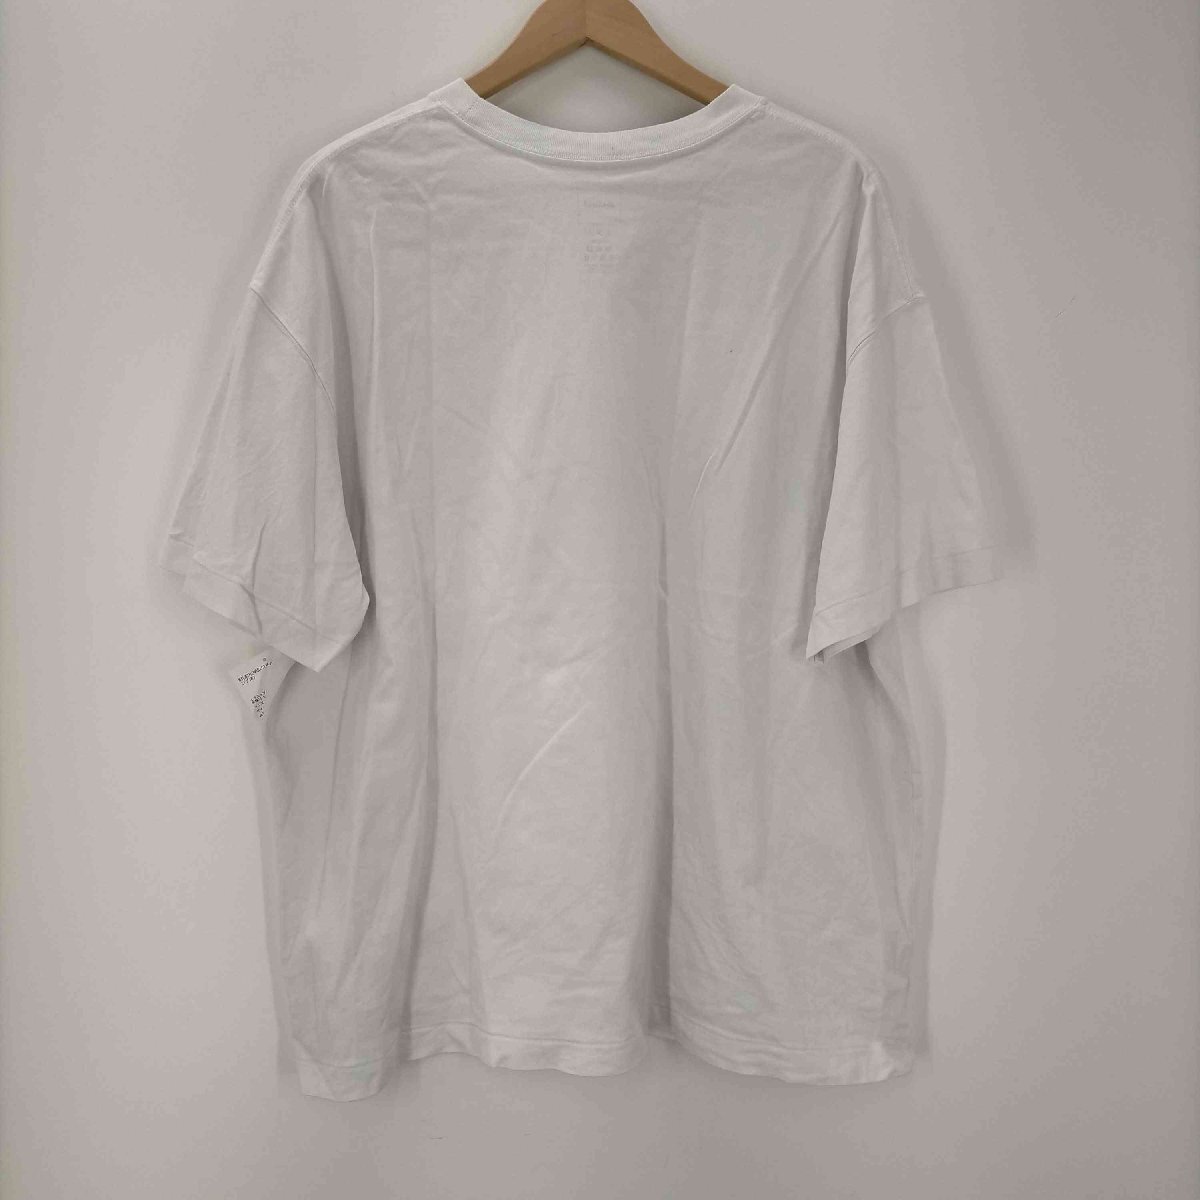 WILDTHINGS(ワイルドシングス) イラストプリント クルーネック 半袖Tシャツ メンズ impor 中古 古着 0543_画像2